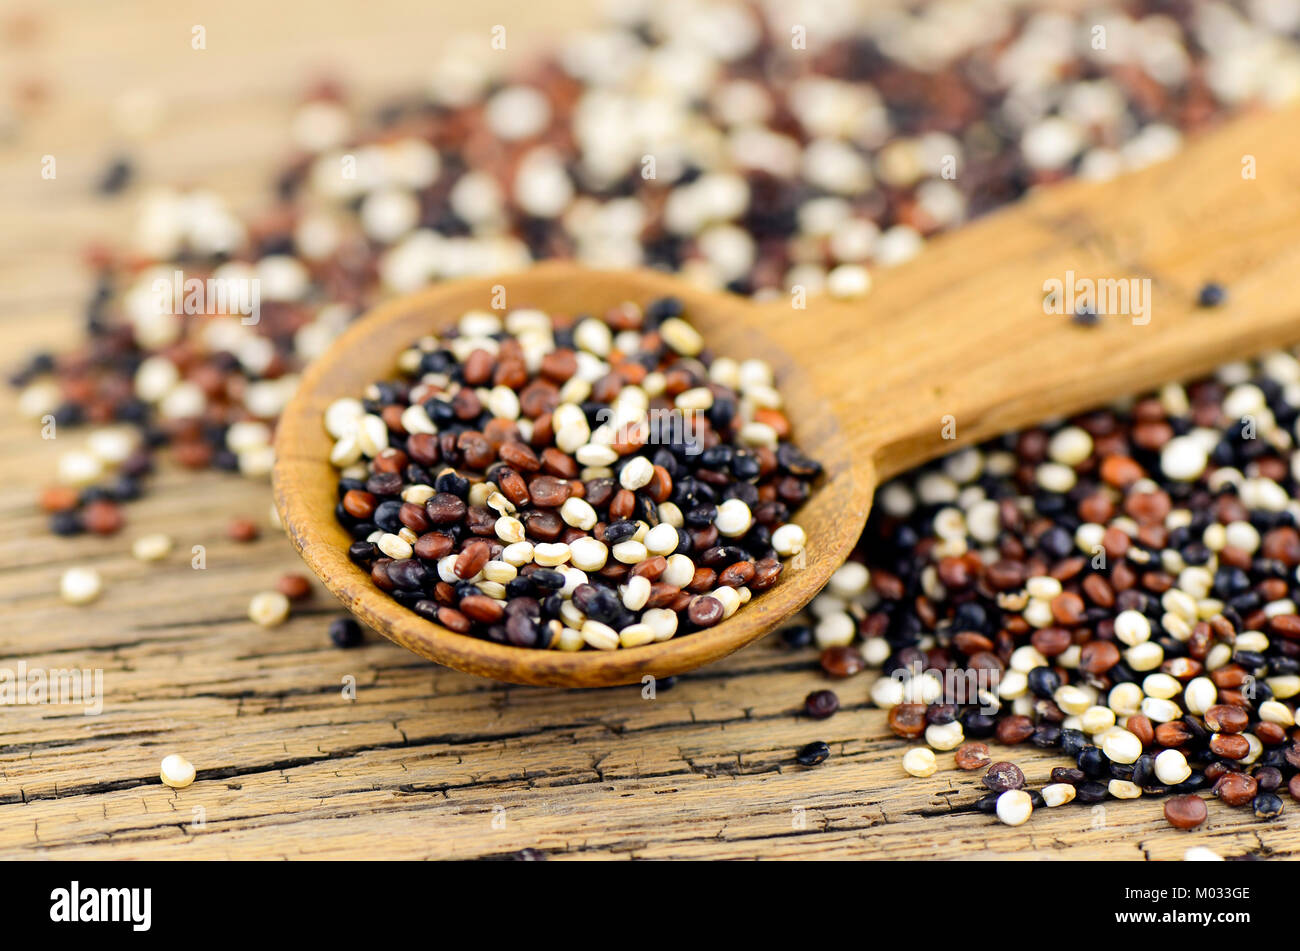 Le quinoa (Chenopodium quinoa mixte) des semences. Le quinoa cuit à la teneur en éléments nutritifs des fournitures semblable à celle du blé et du riz. Banque D'Images